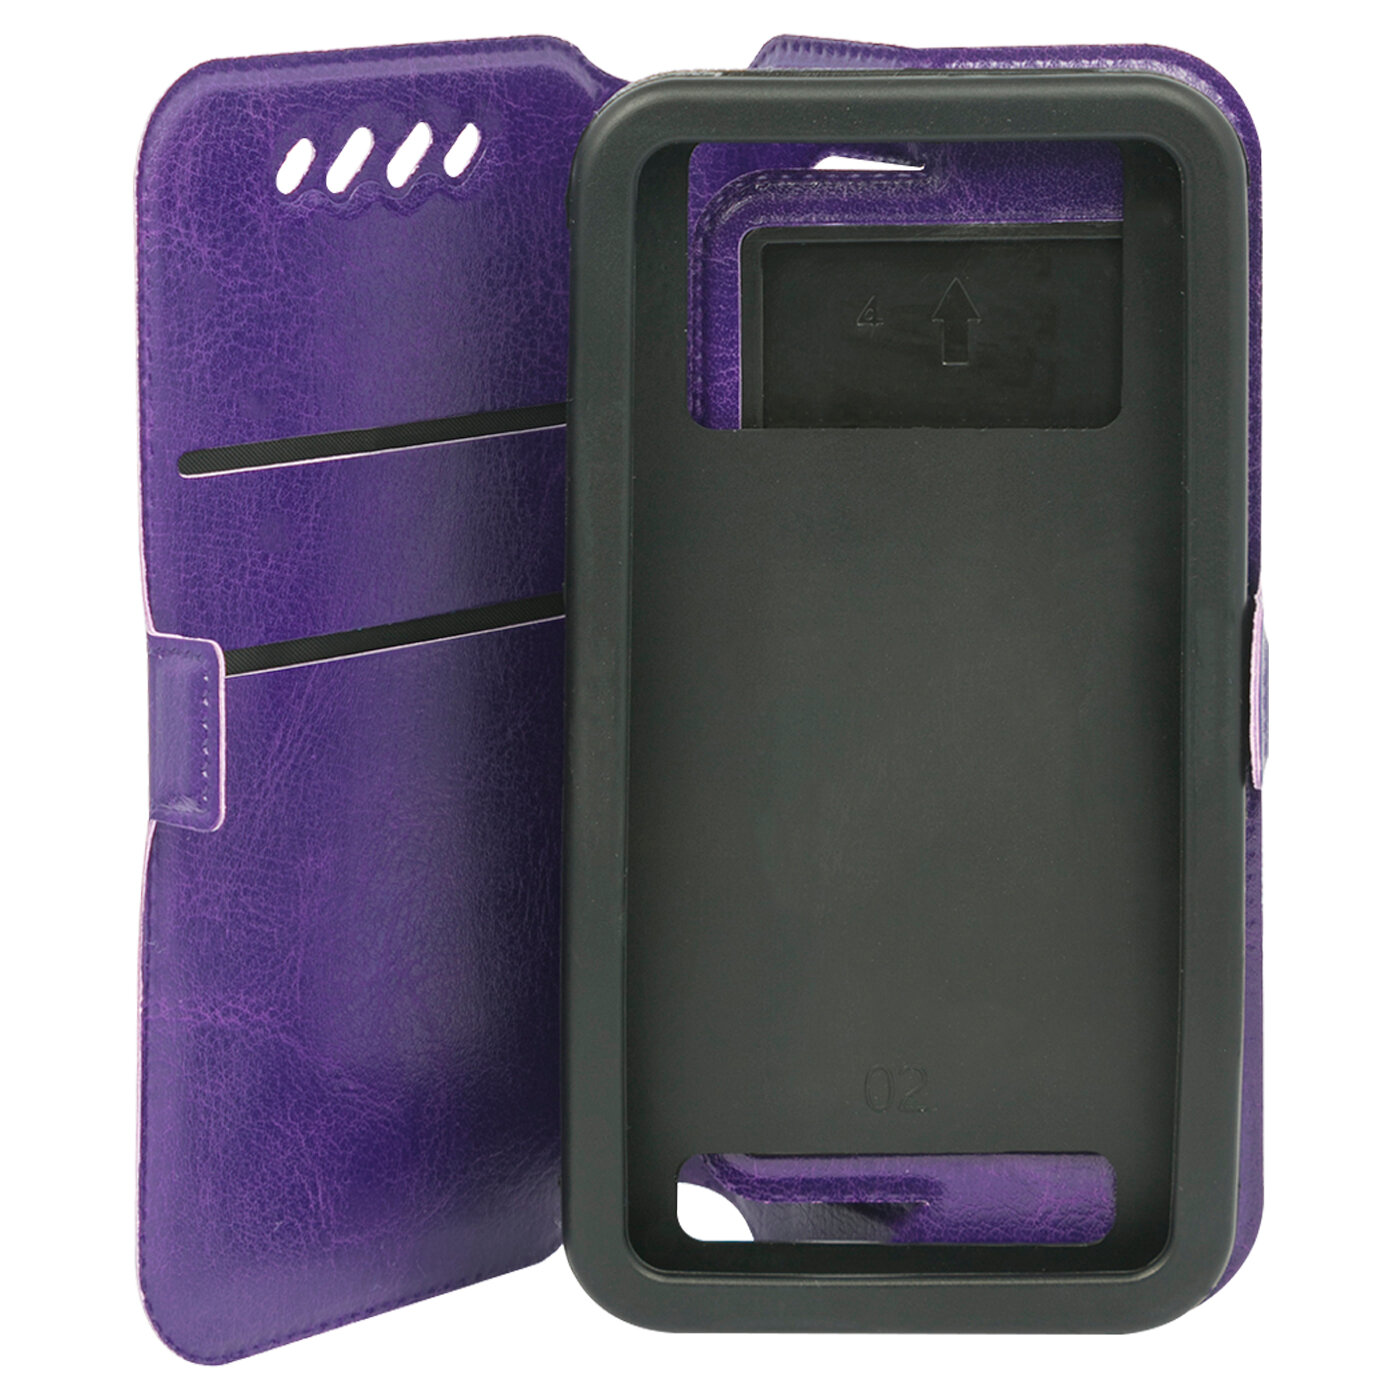 Чехол универсальный iBox Universal Slide, для телефонов 3,5-4,2 дюйма (фиолетовый) - фото №2